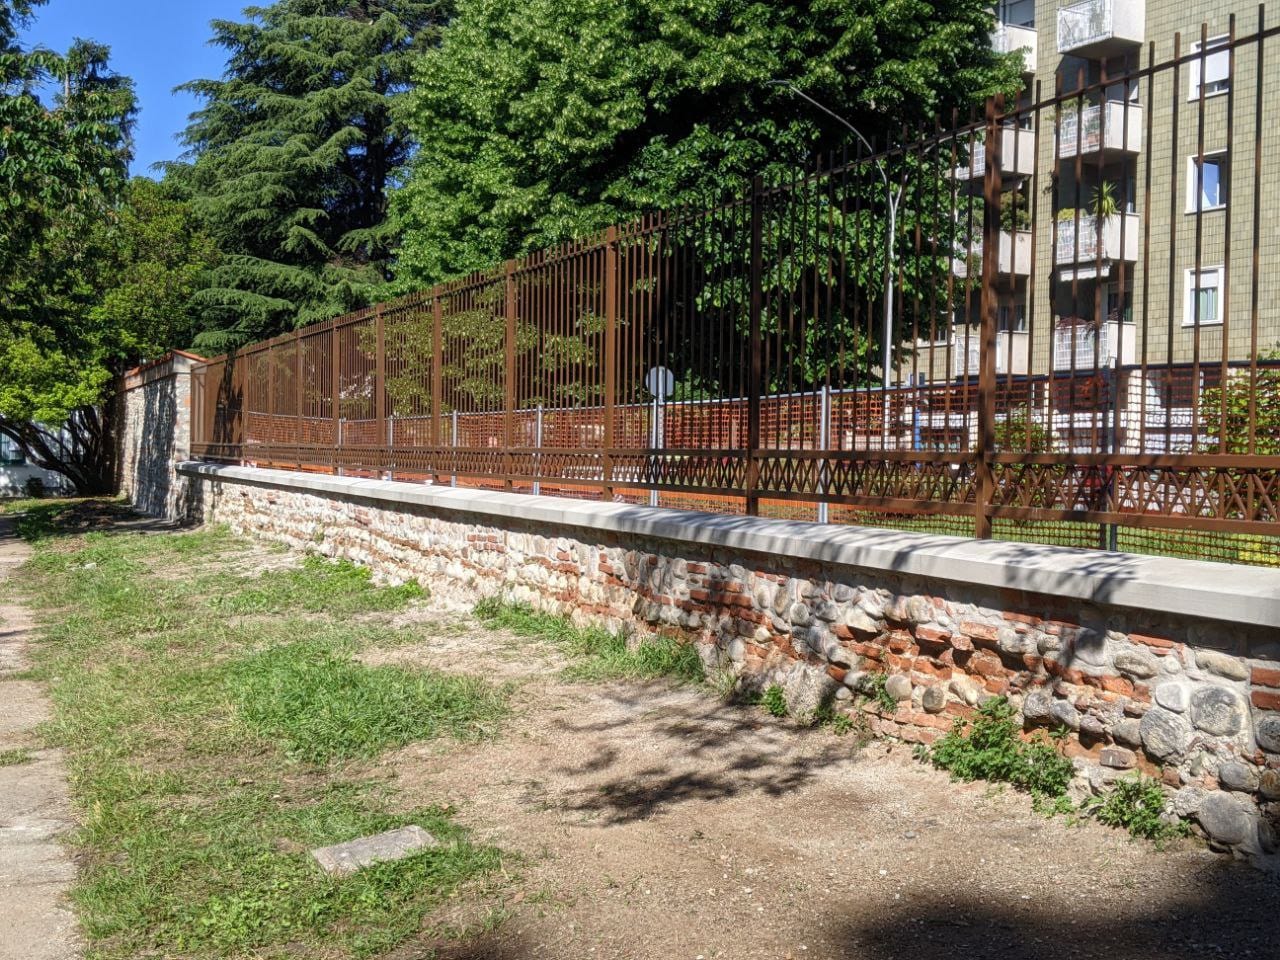 Parco De Rocchi, cantiere finito: cancellata posizionata, muro ricostruito con si faceva nell’Ottocento